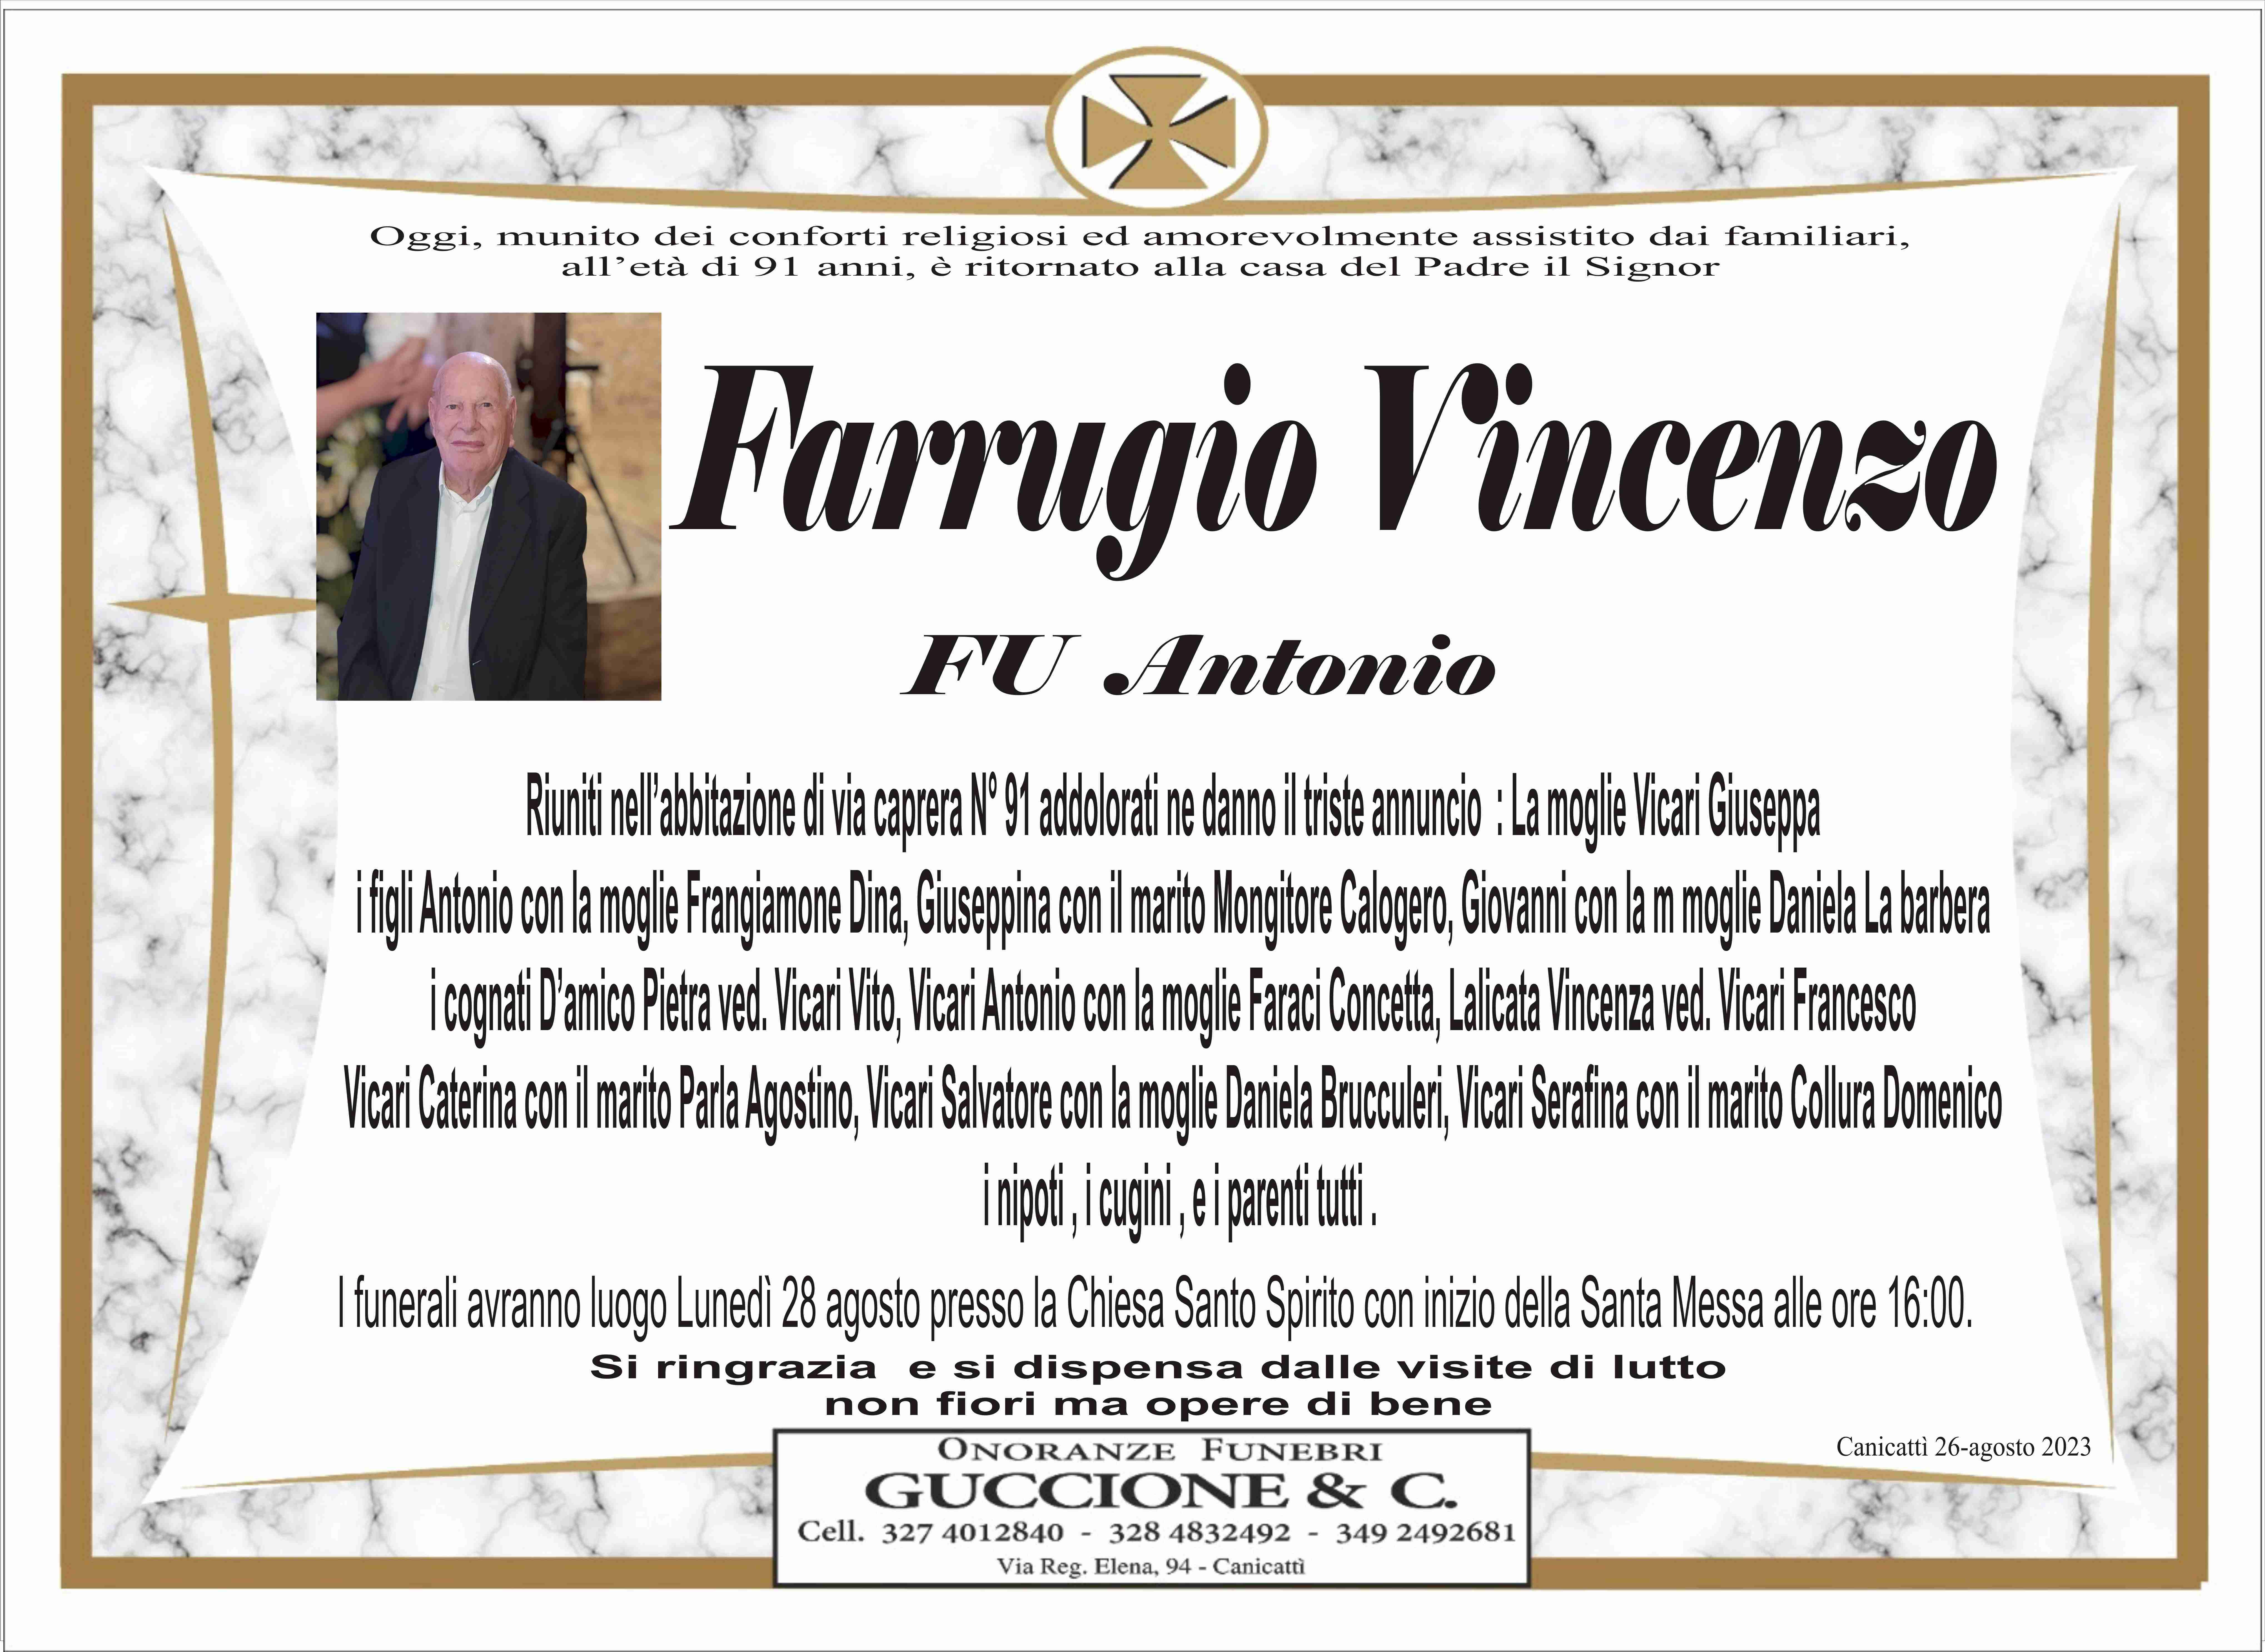 Farrugio Vincenzo